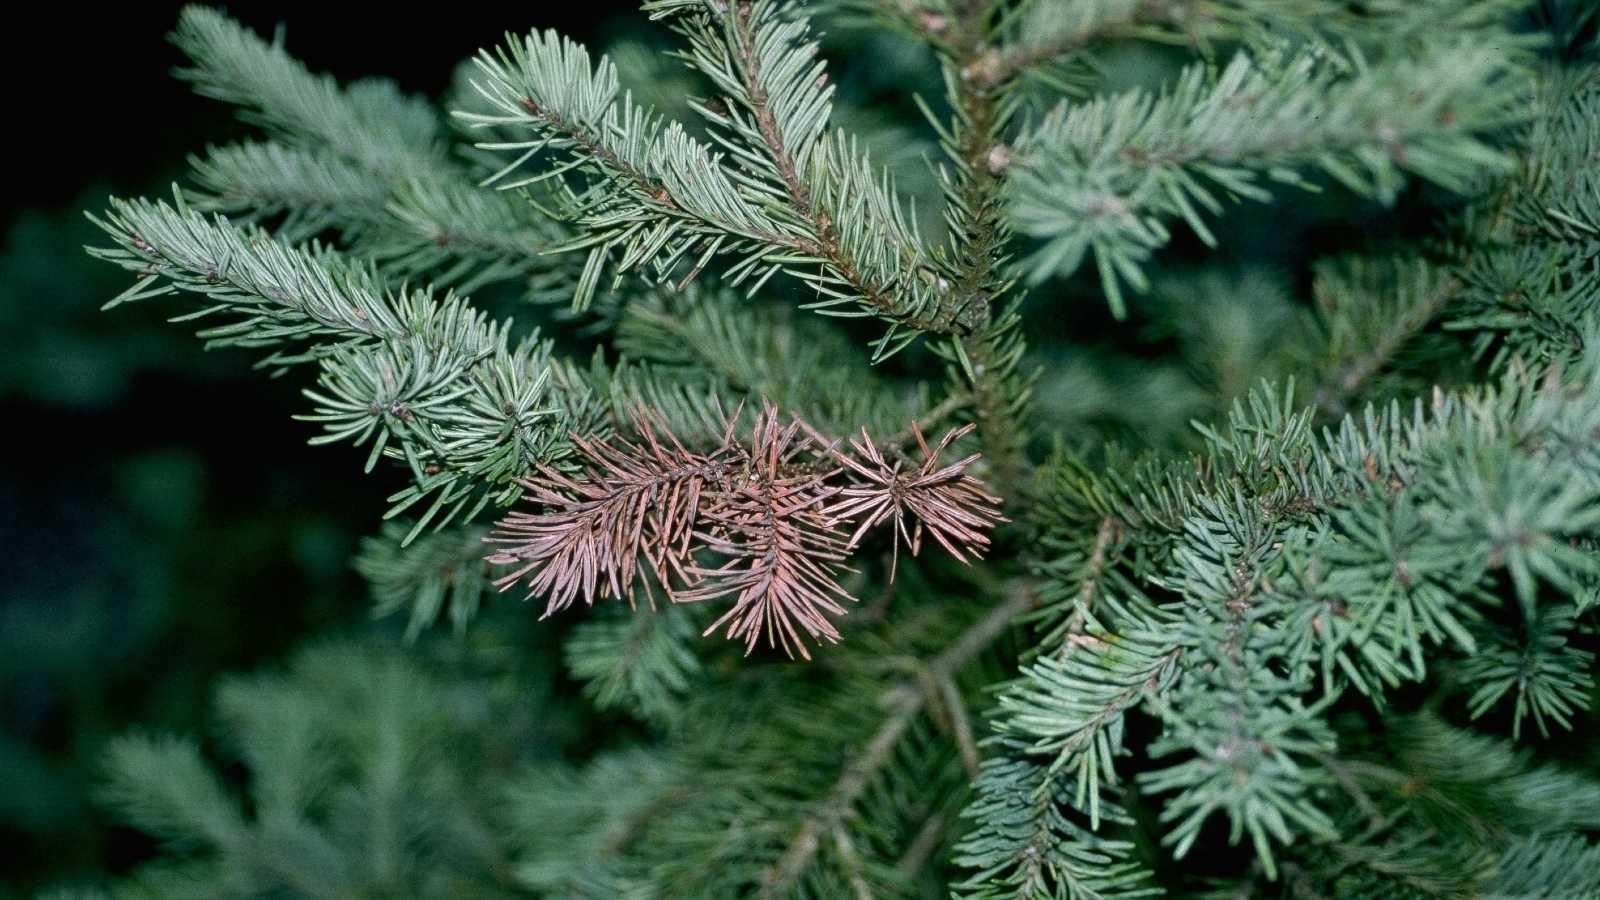 Rhizosphaeria symptoms on blue spruce